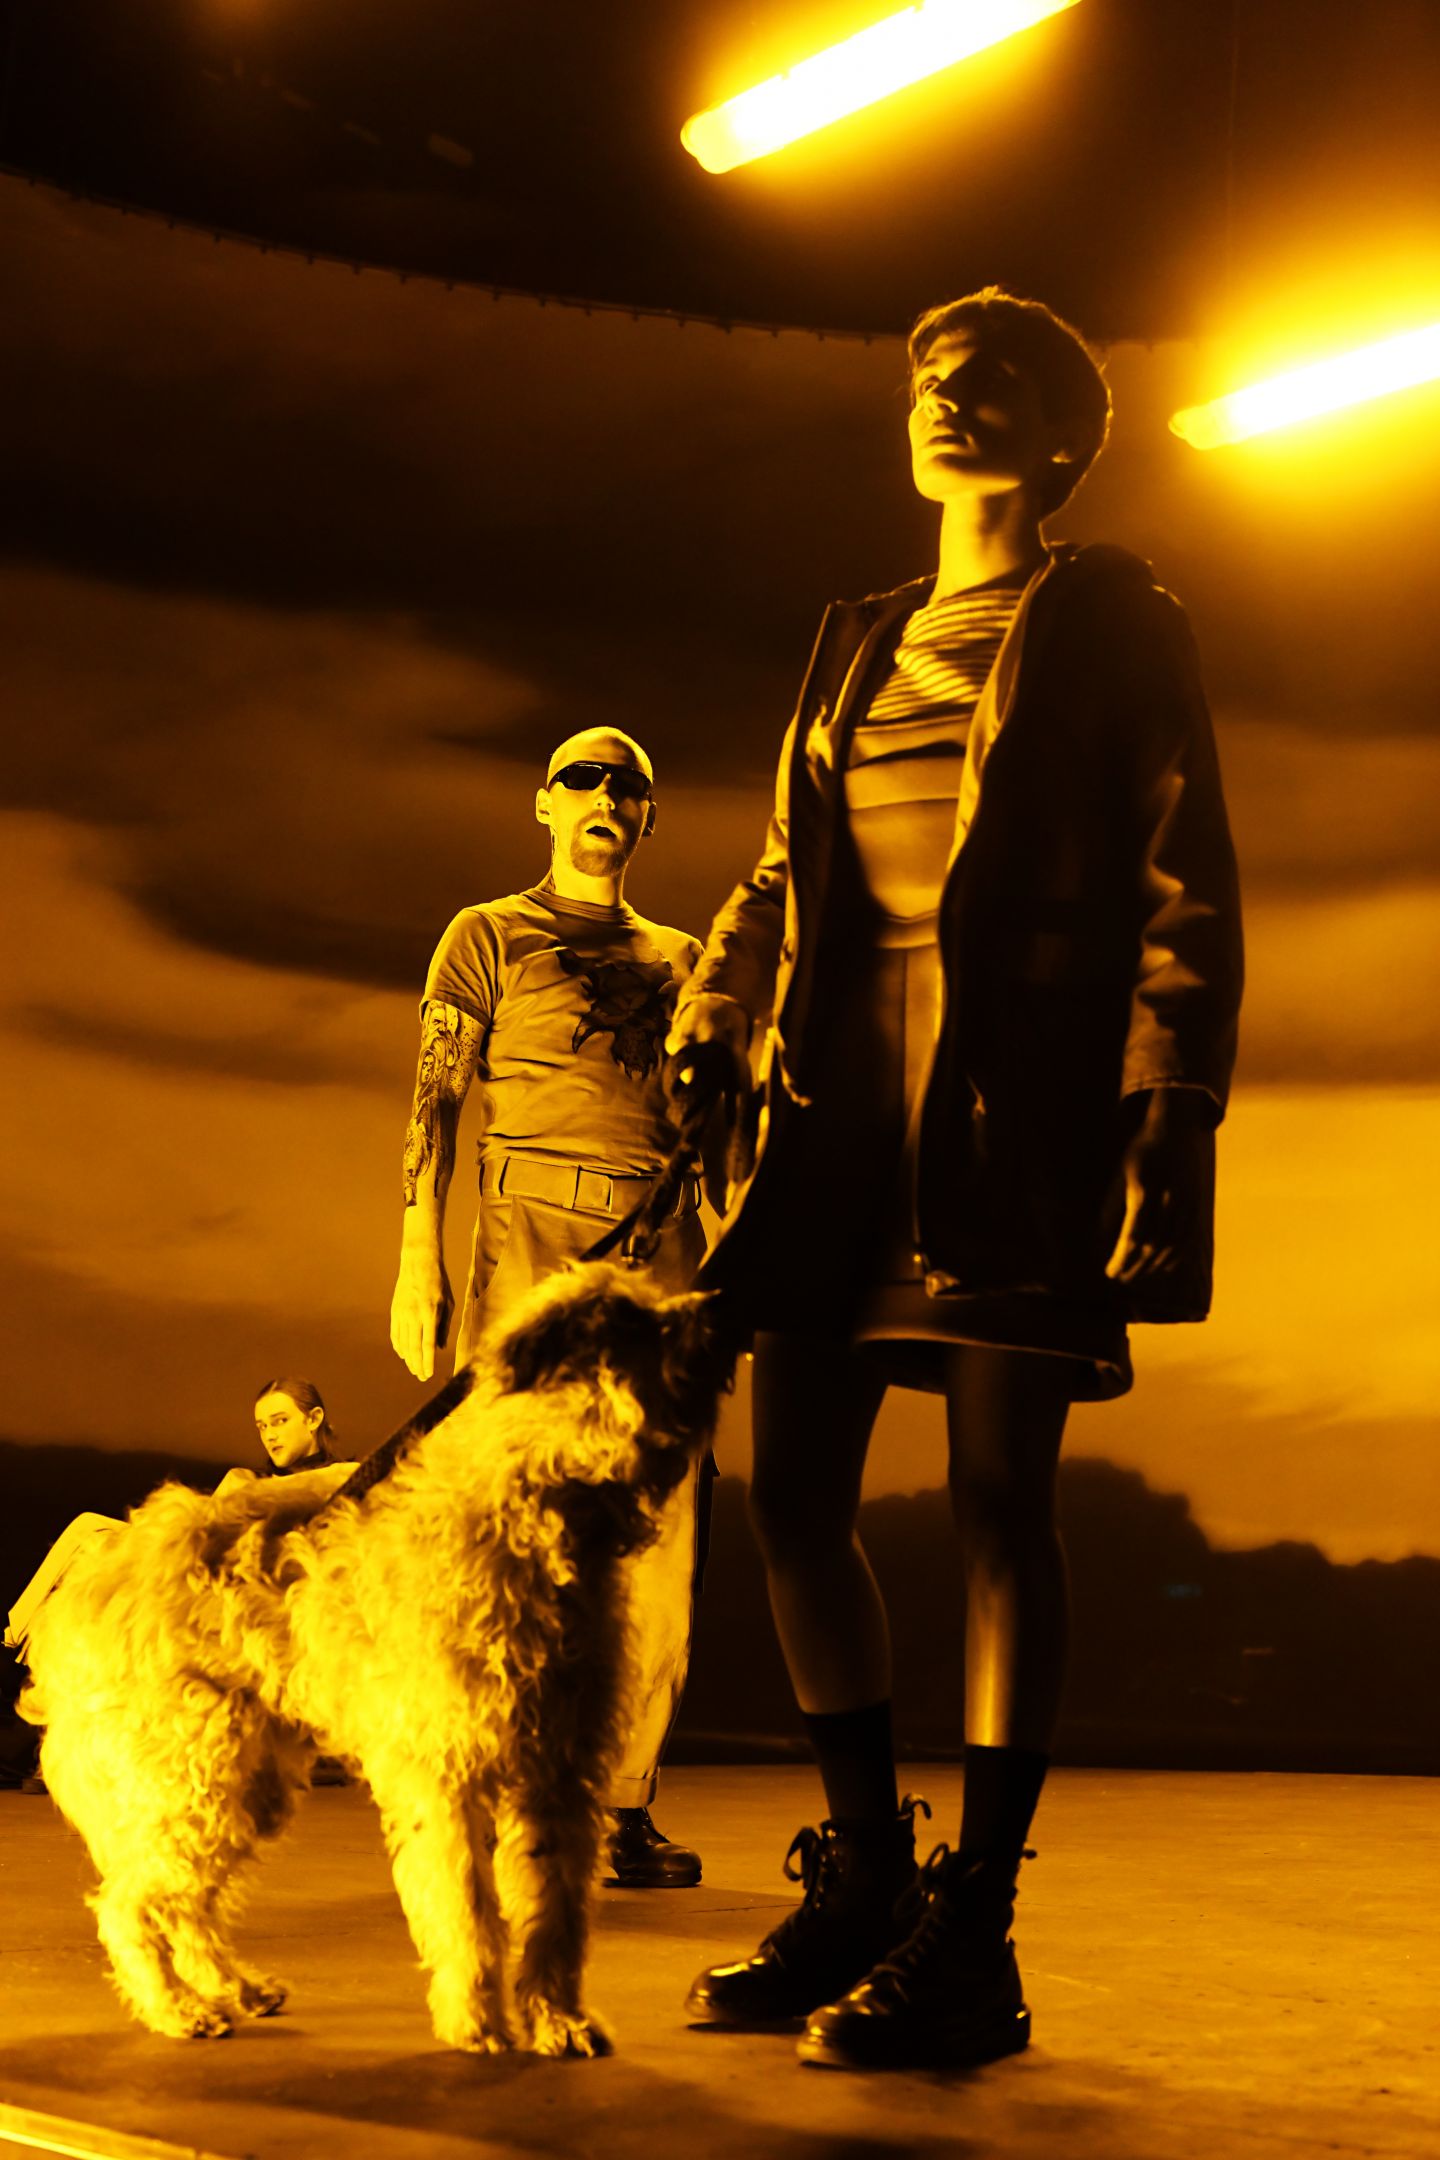 Das Bild zeigt eine Frau mit Hund, die nach oben schaut. Sie wird von einem Mann mit Sonnenbrille beobachtet.